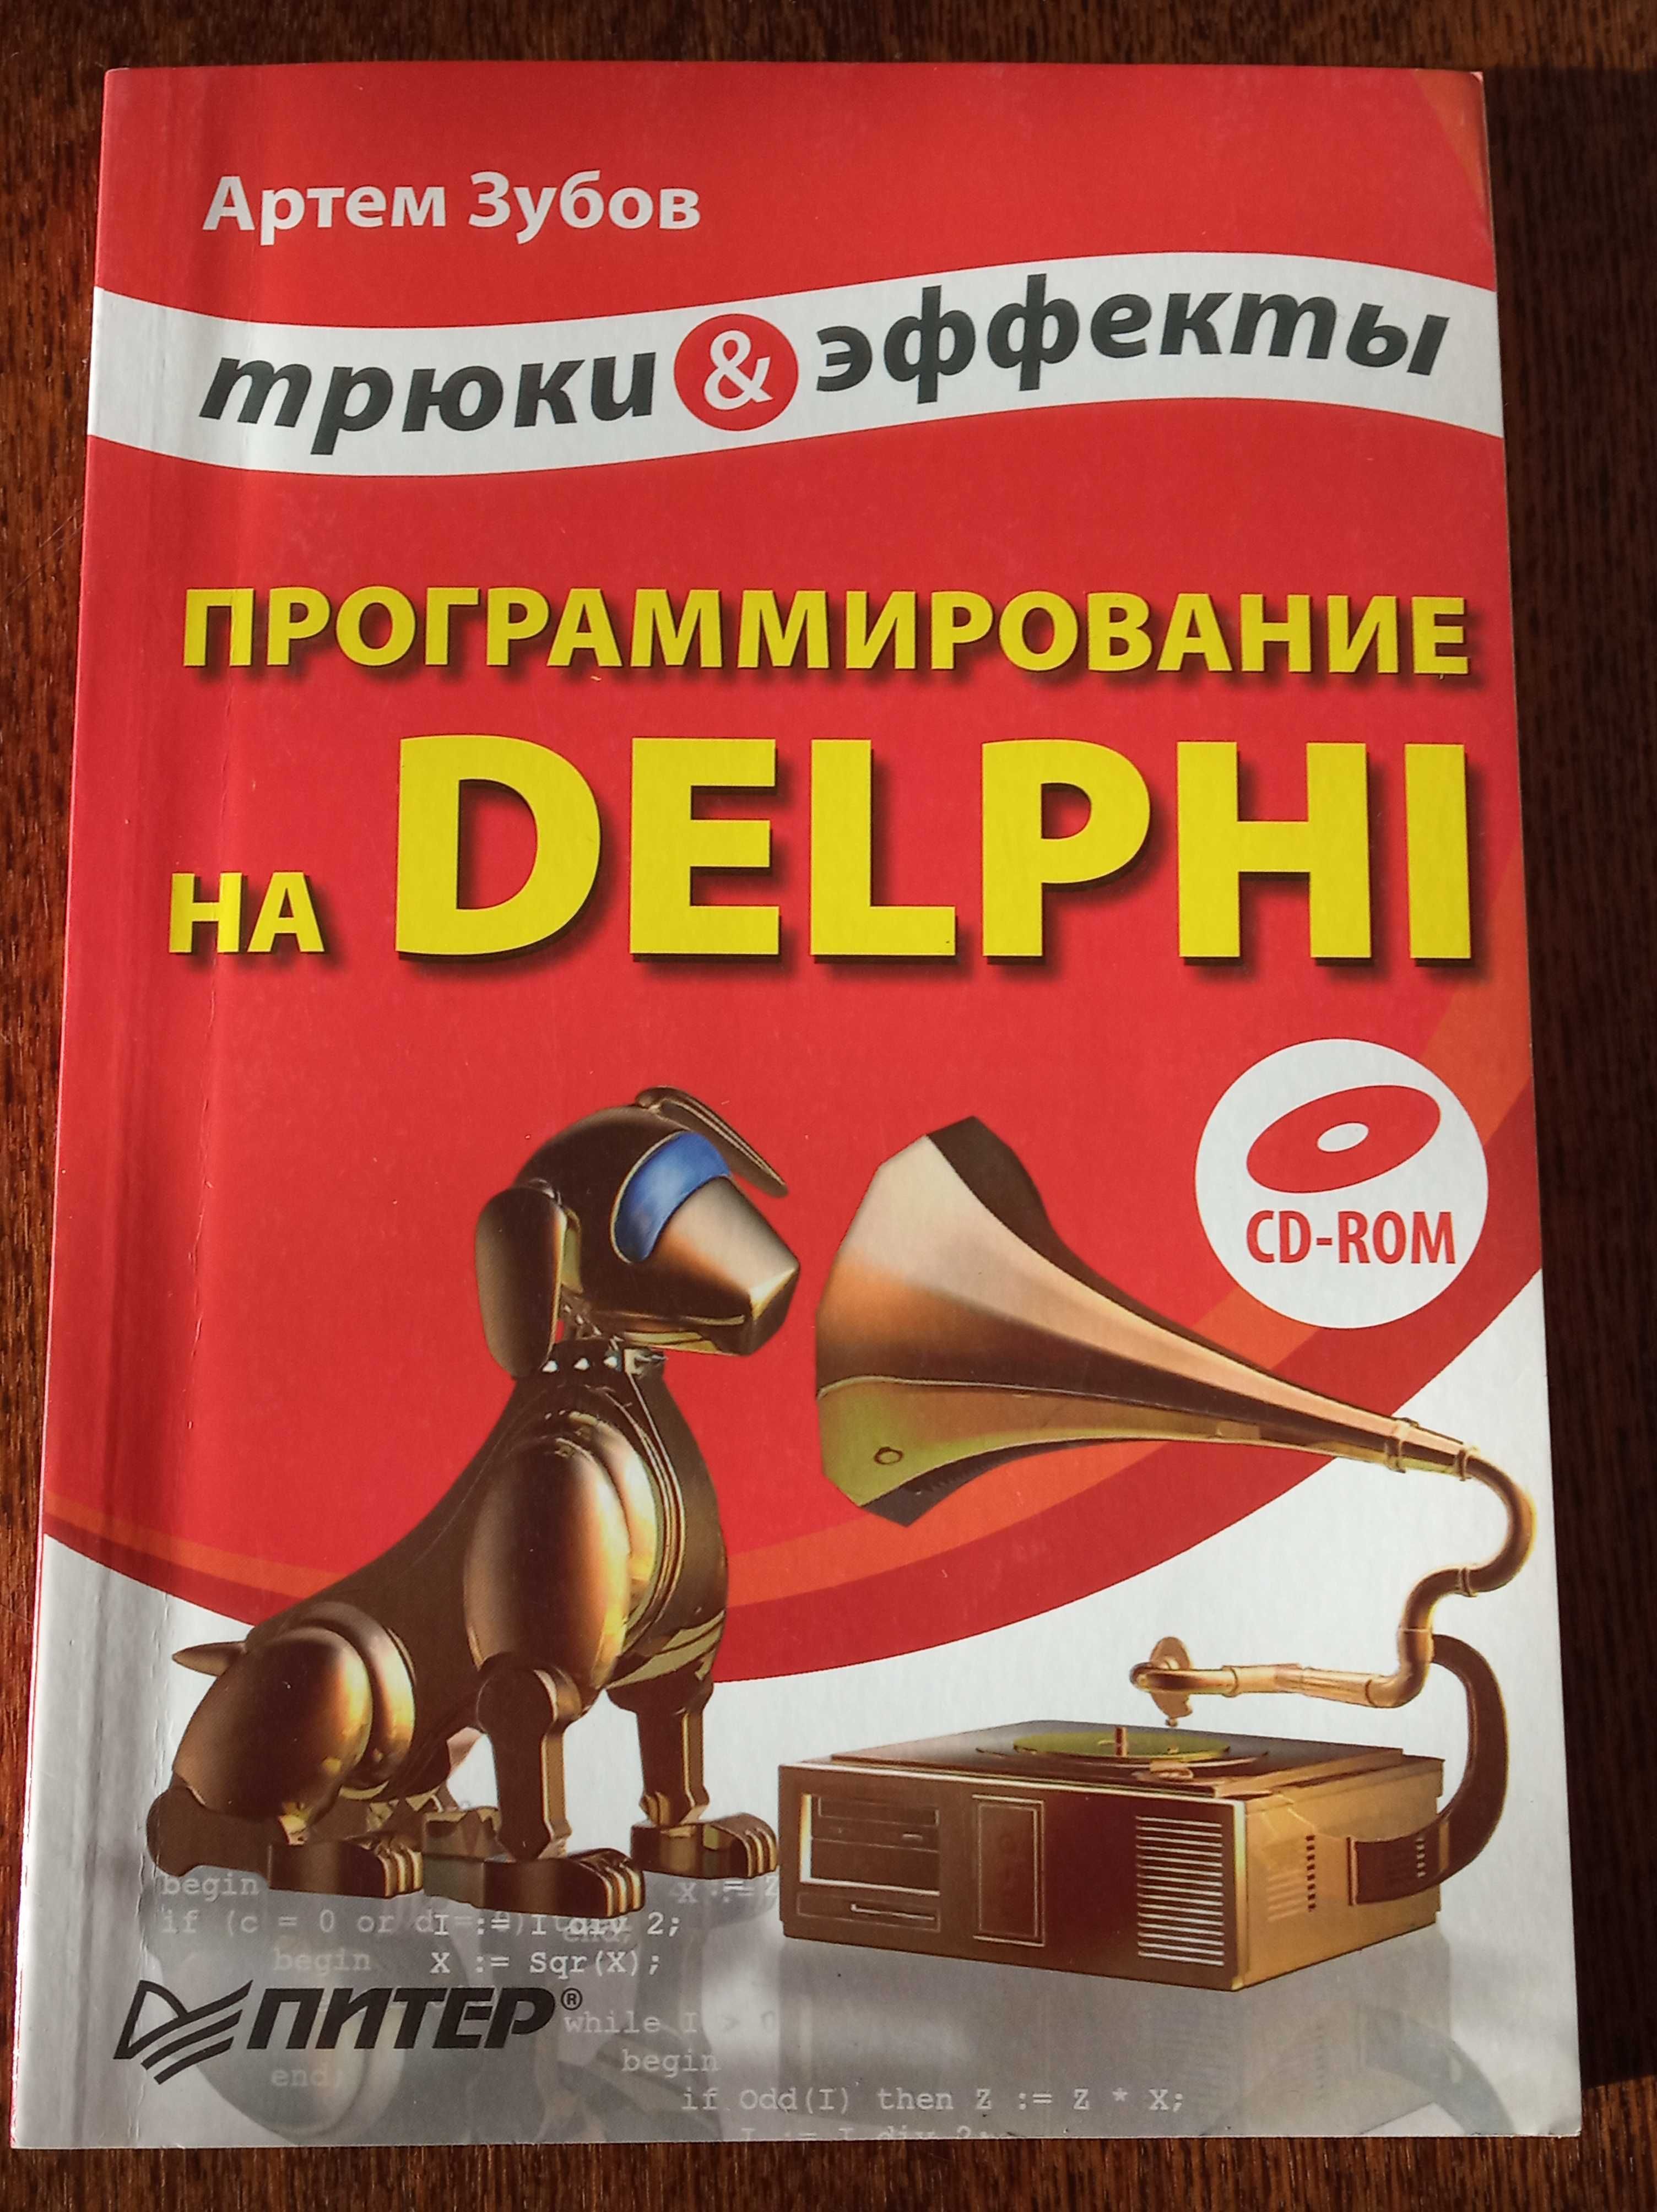 Учебник Делфи (Delphi) по программированию. Книга с примерами.